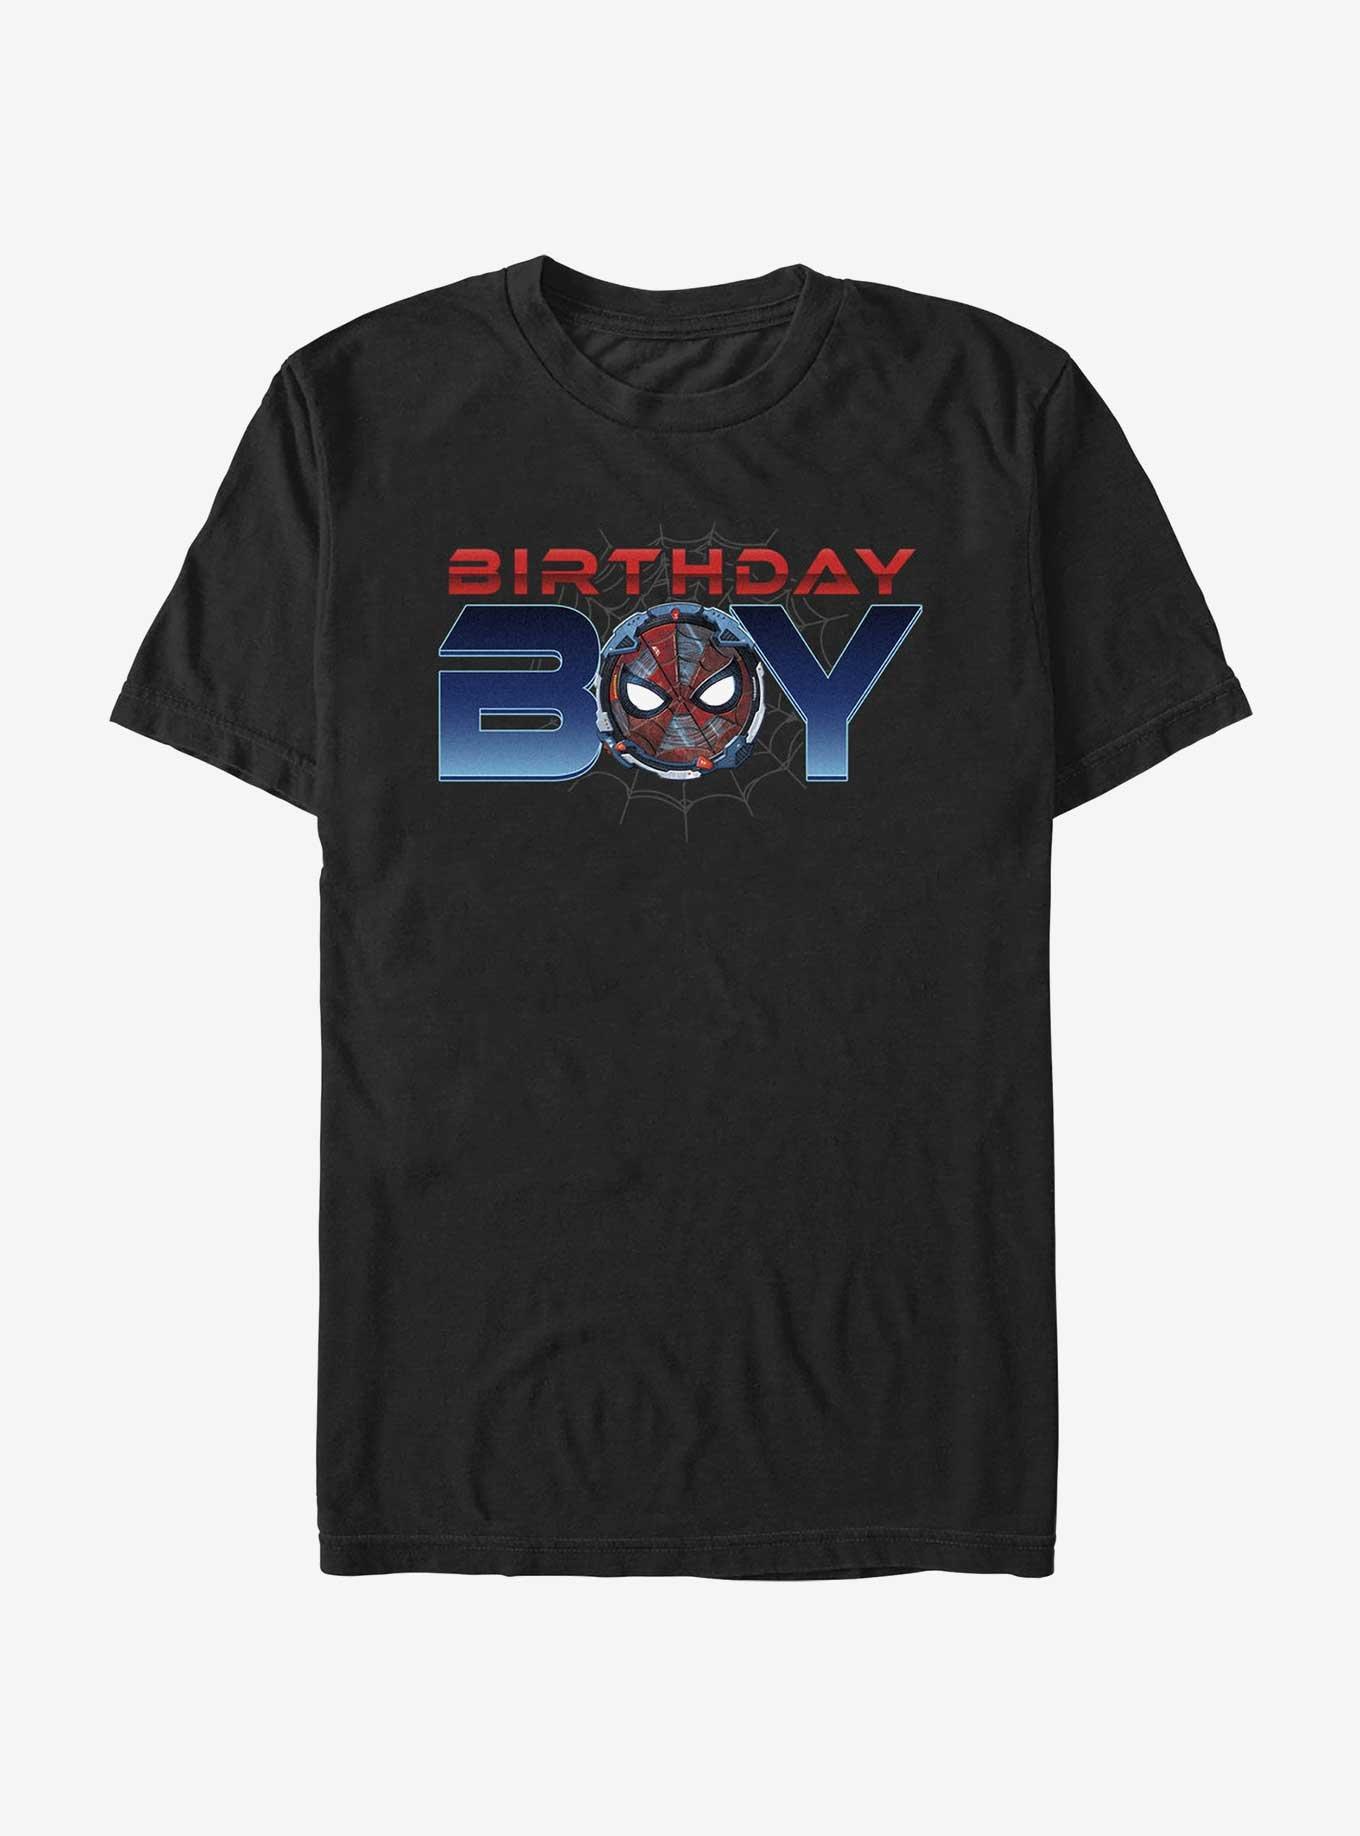 Marvel Birthday Boy Spidey T-Shirt